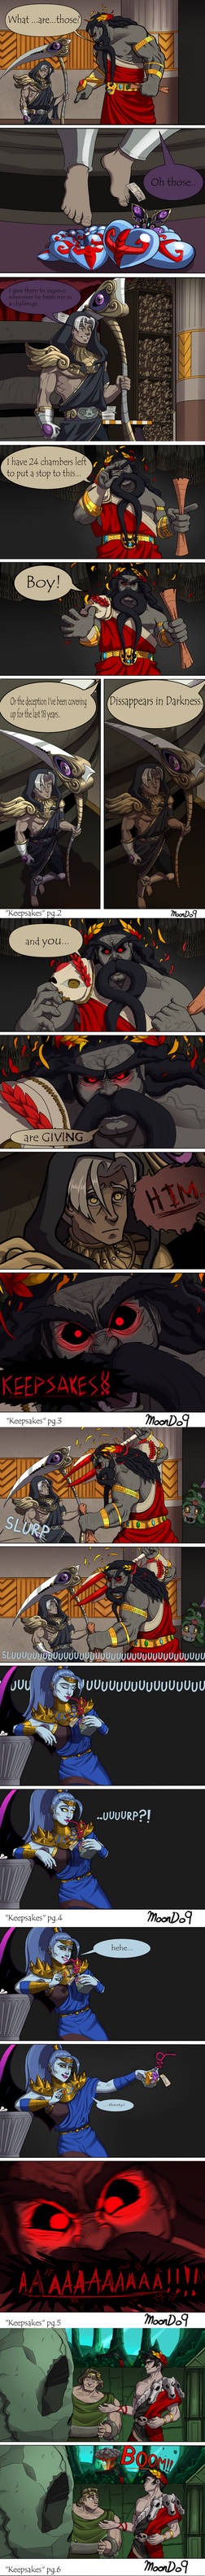 Hades Comic: Keepsakes